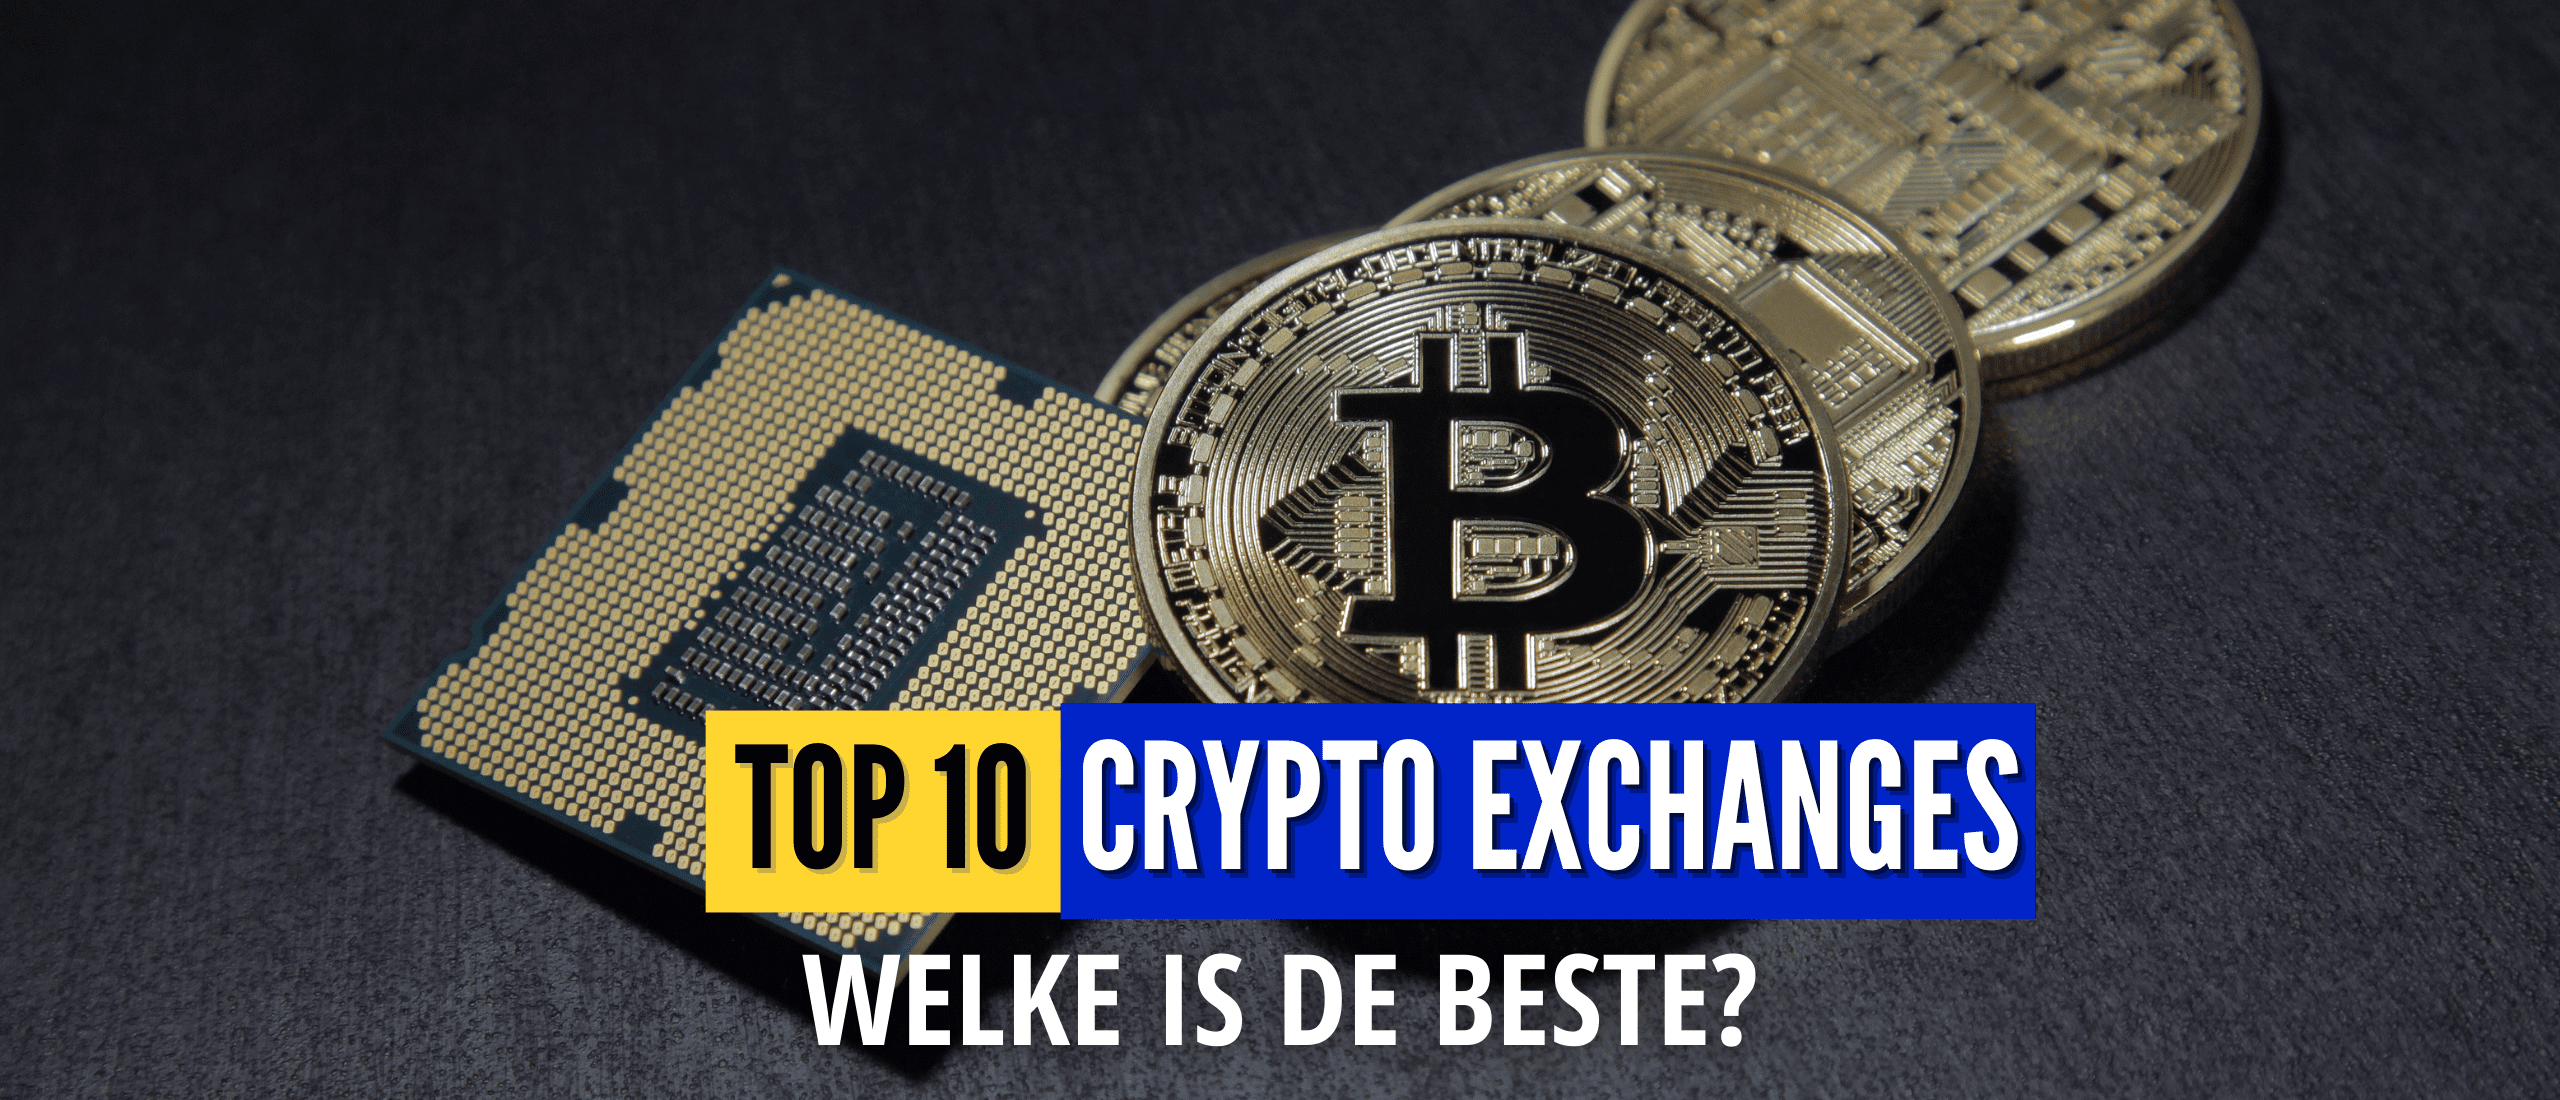 beste-crypto-exchange-top-10